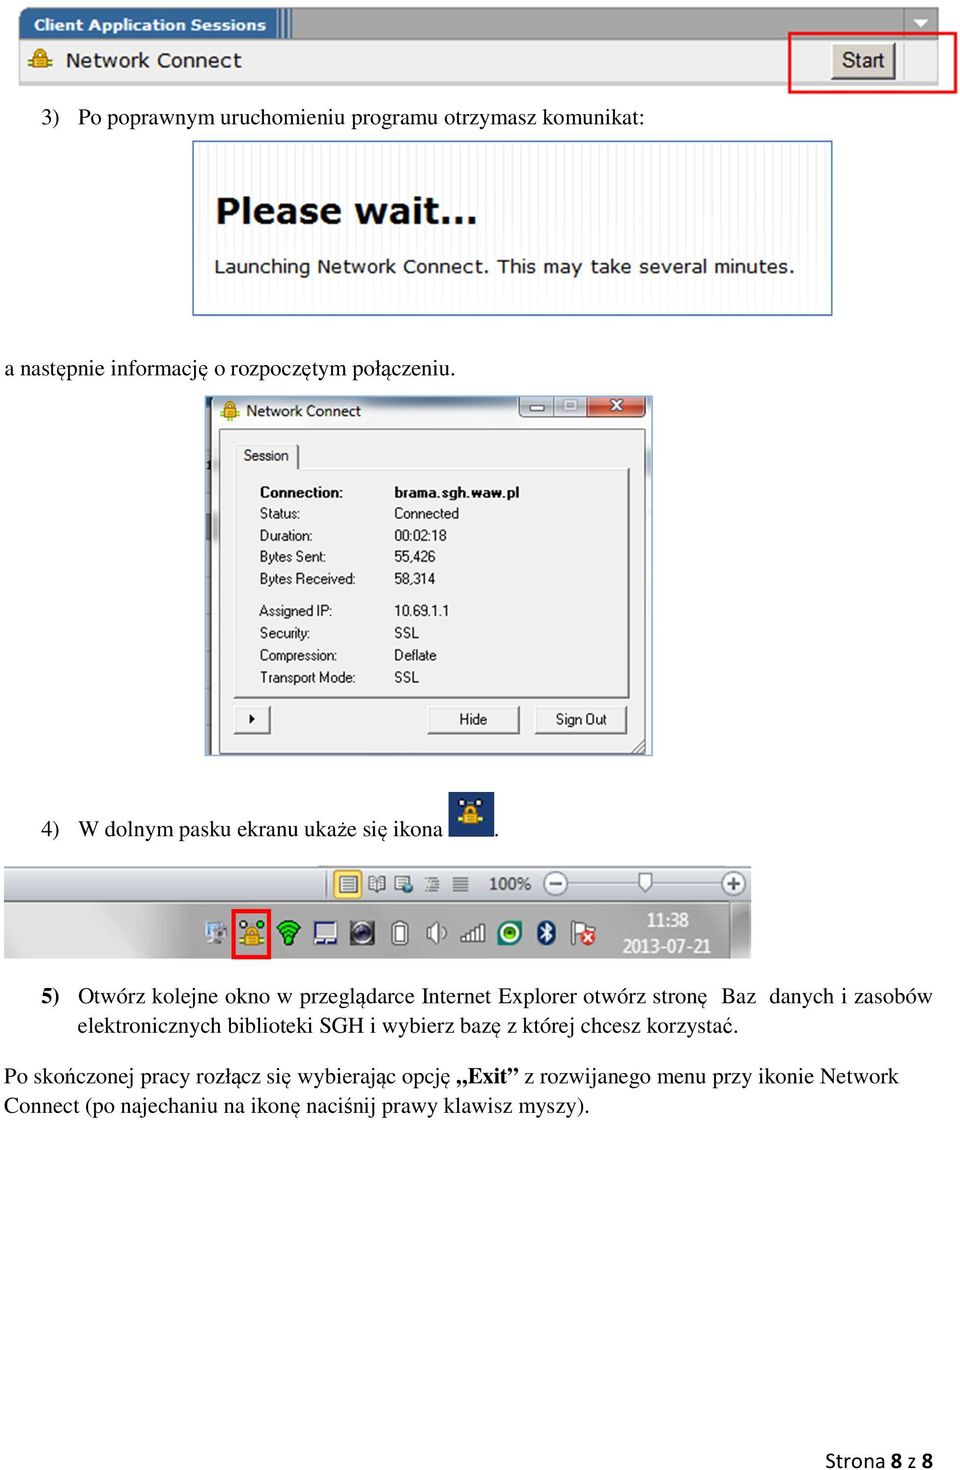 5) Otwórz kolejne okno w przeglądarce Internet Explorer otwórz stronę Baz danych i zasobów elektronicznych biblioteki